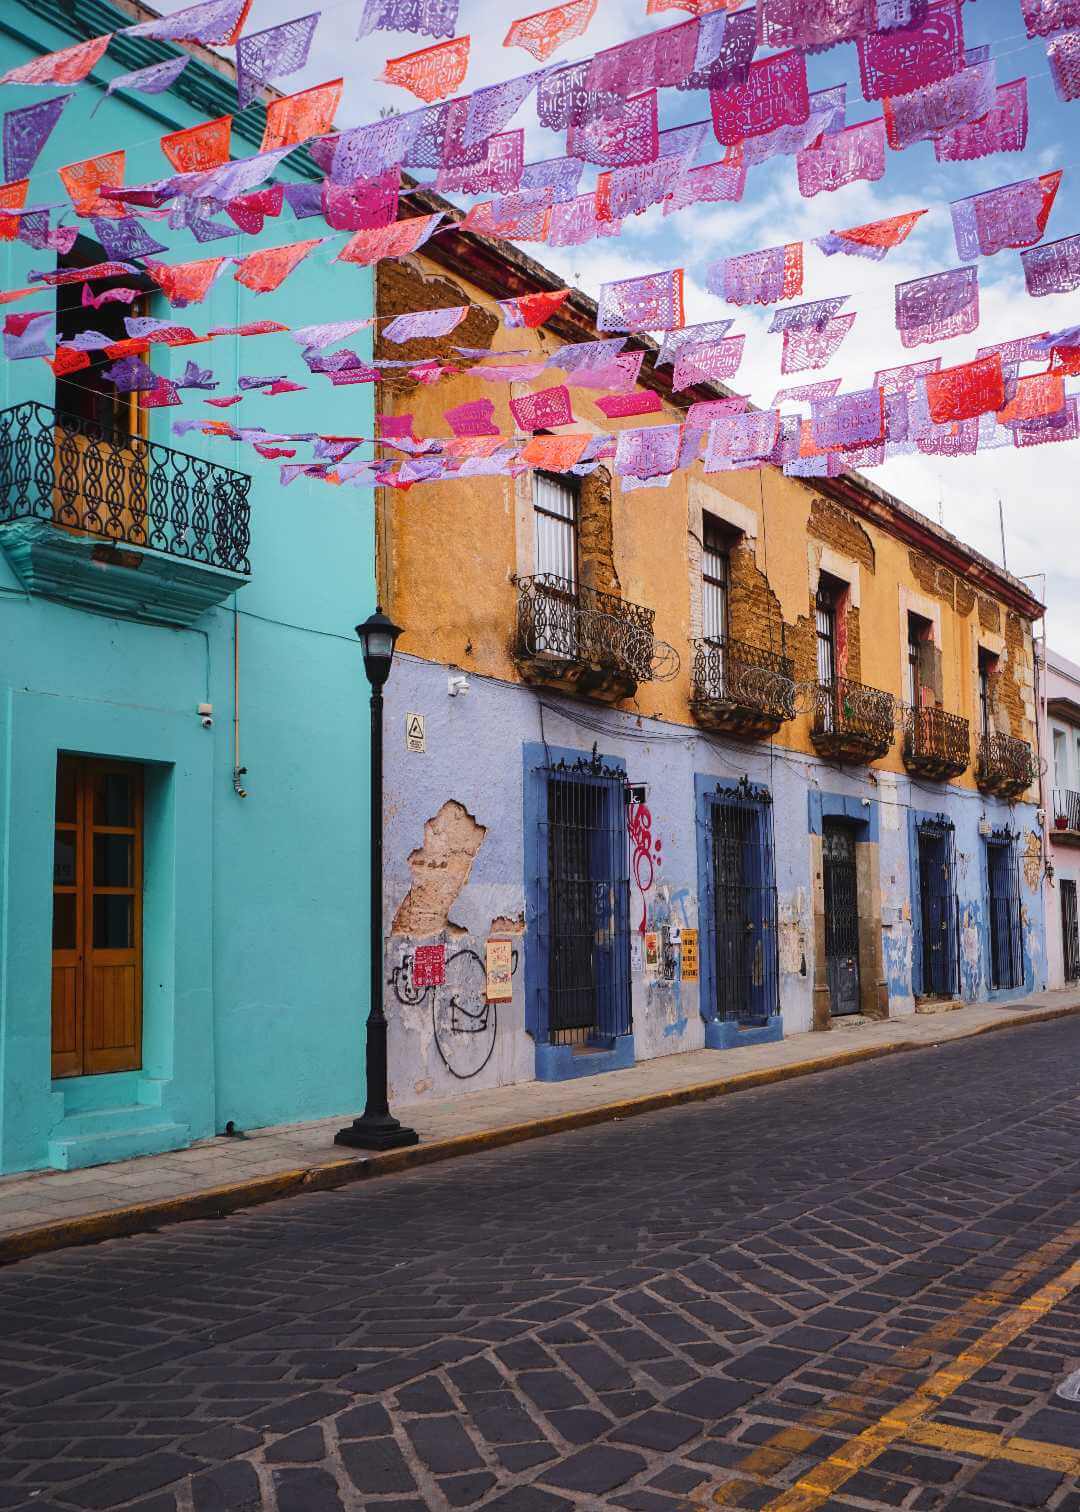 Calle en Oaxaca decorada con papel picado